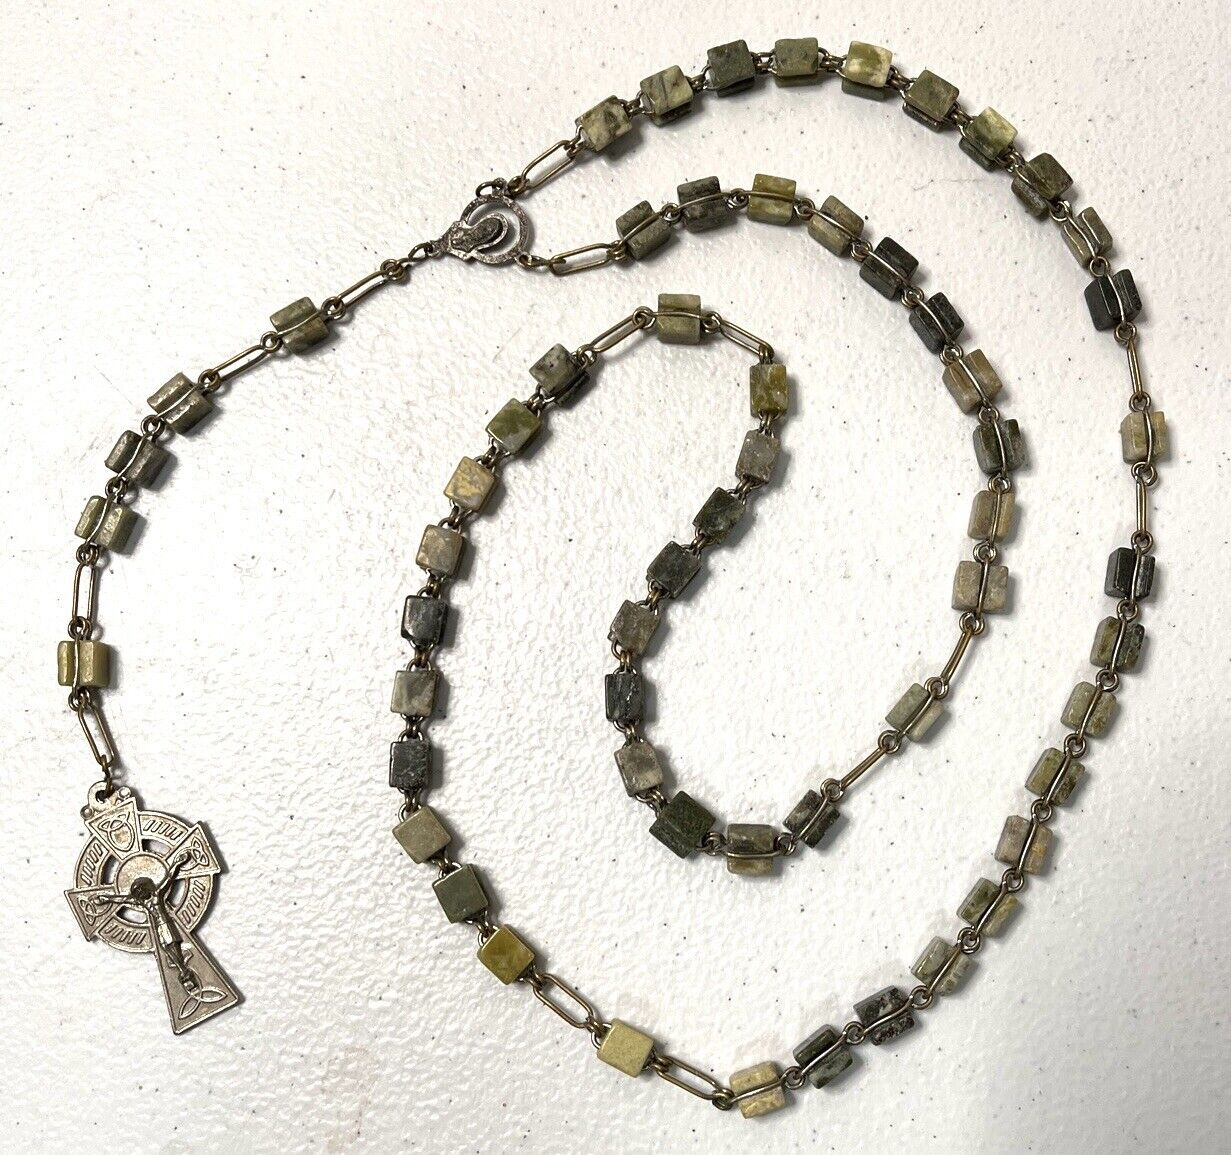 Irish Connemara Marble Rosary Prayer Beads Handcrafted in Ireland by J.C.Walsh 